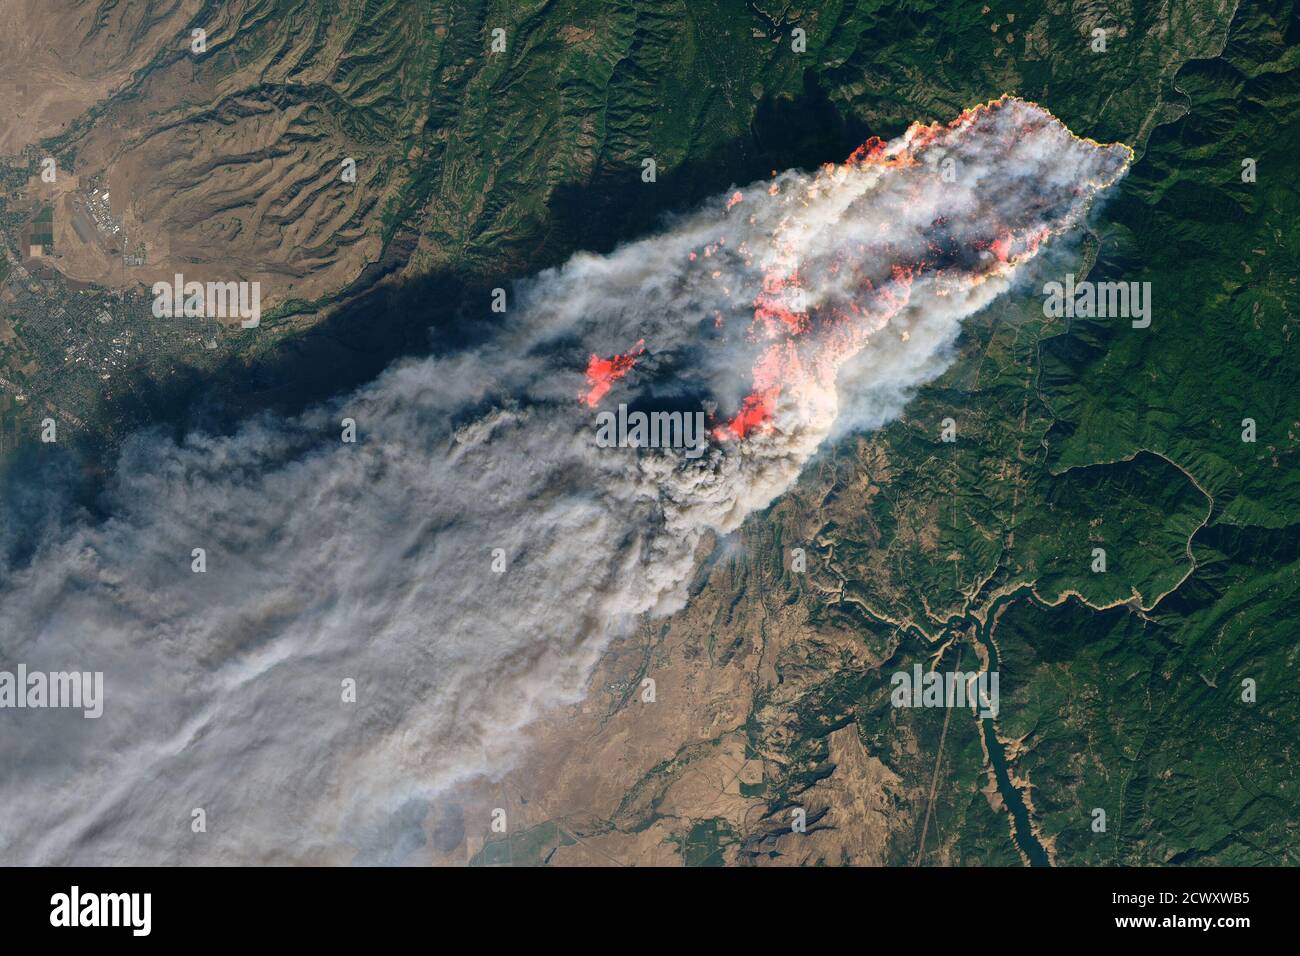 Camp Fire infuria in California la mattina dell'8 novembre 2018, il Camp Fire ha eruttato 90 miglia (140 chilometri) a nord di Sacramento, California. La sera, il fuoco in rapido movimento aveva circa 18,000 acri di terreno ed era rimasto contenuto per lo zero per cento, secondo i notiziari. L'Operational Land Imager su Landsat 8 ha acquisito questa immagine l'8 novembre 2018, intorno alle 10:45 ora locale (06:45 ora universale). L'immagine a colori naturali è stata creata utilizzando le bande 4-3-2, insieme alla luce infrarossa a onde corte per evidenziare il fuoco attivo. I funzionari stanno evacuando diverse città, tra cui Paradise. Loro h Foto Stock